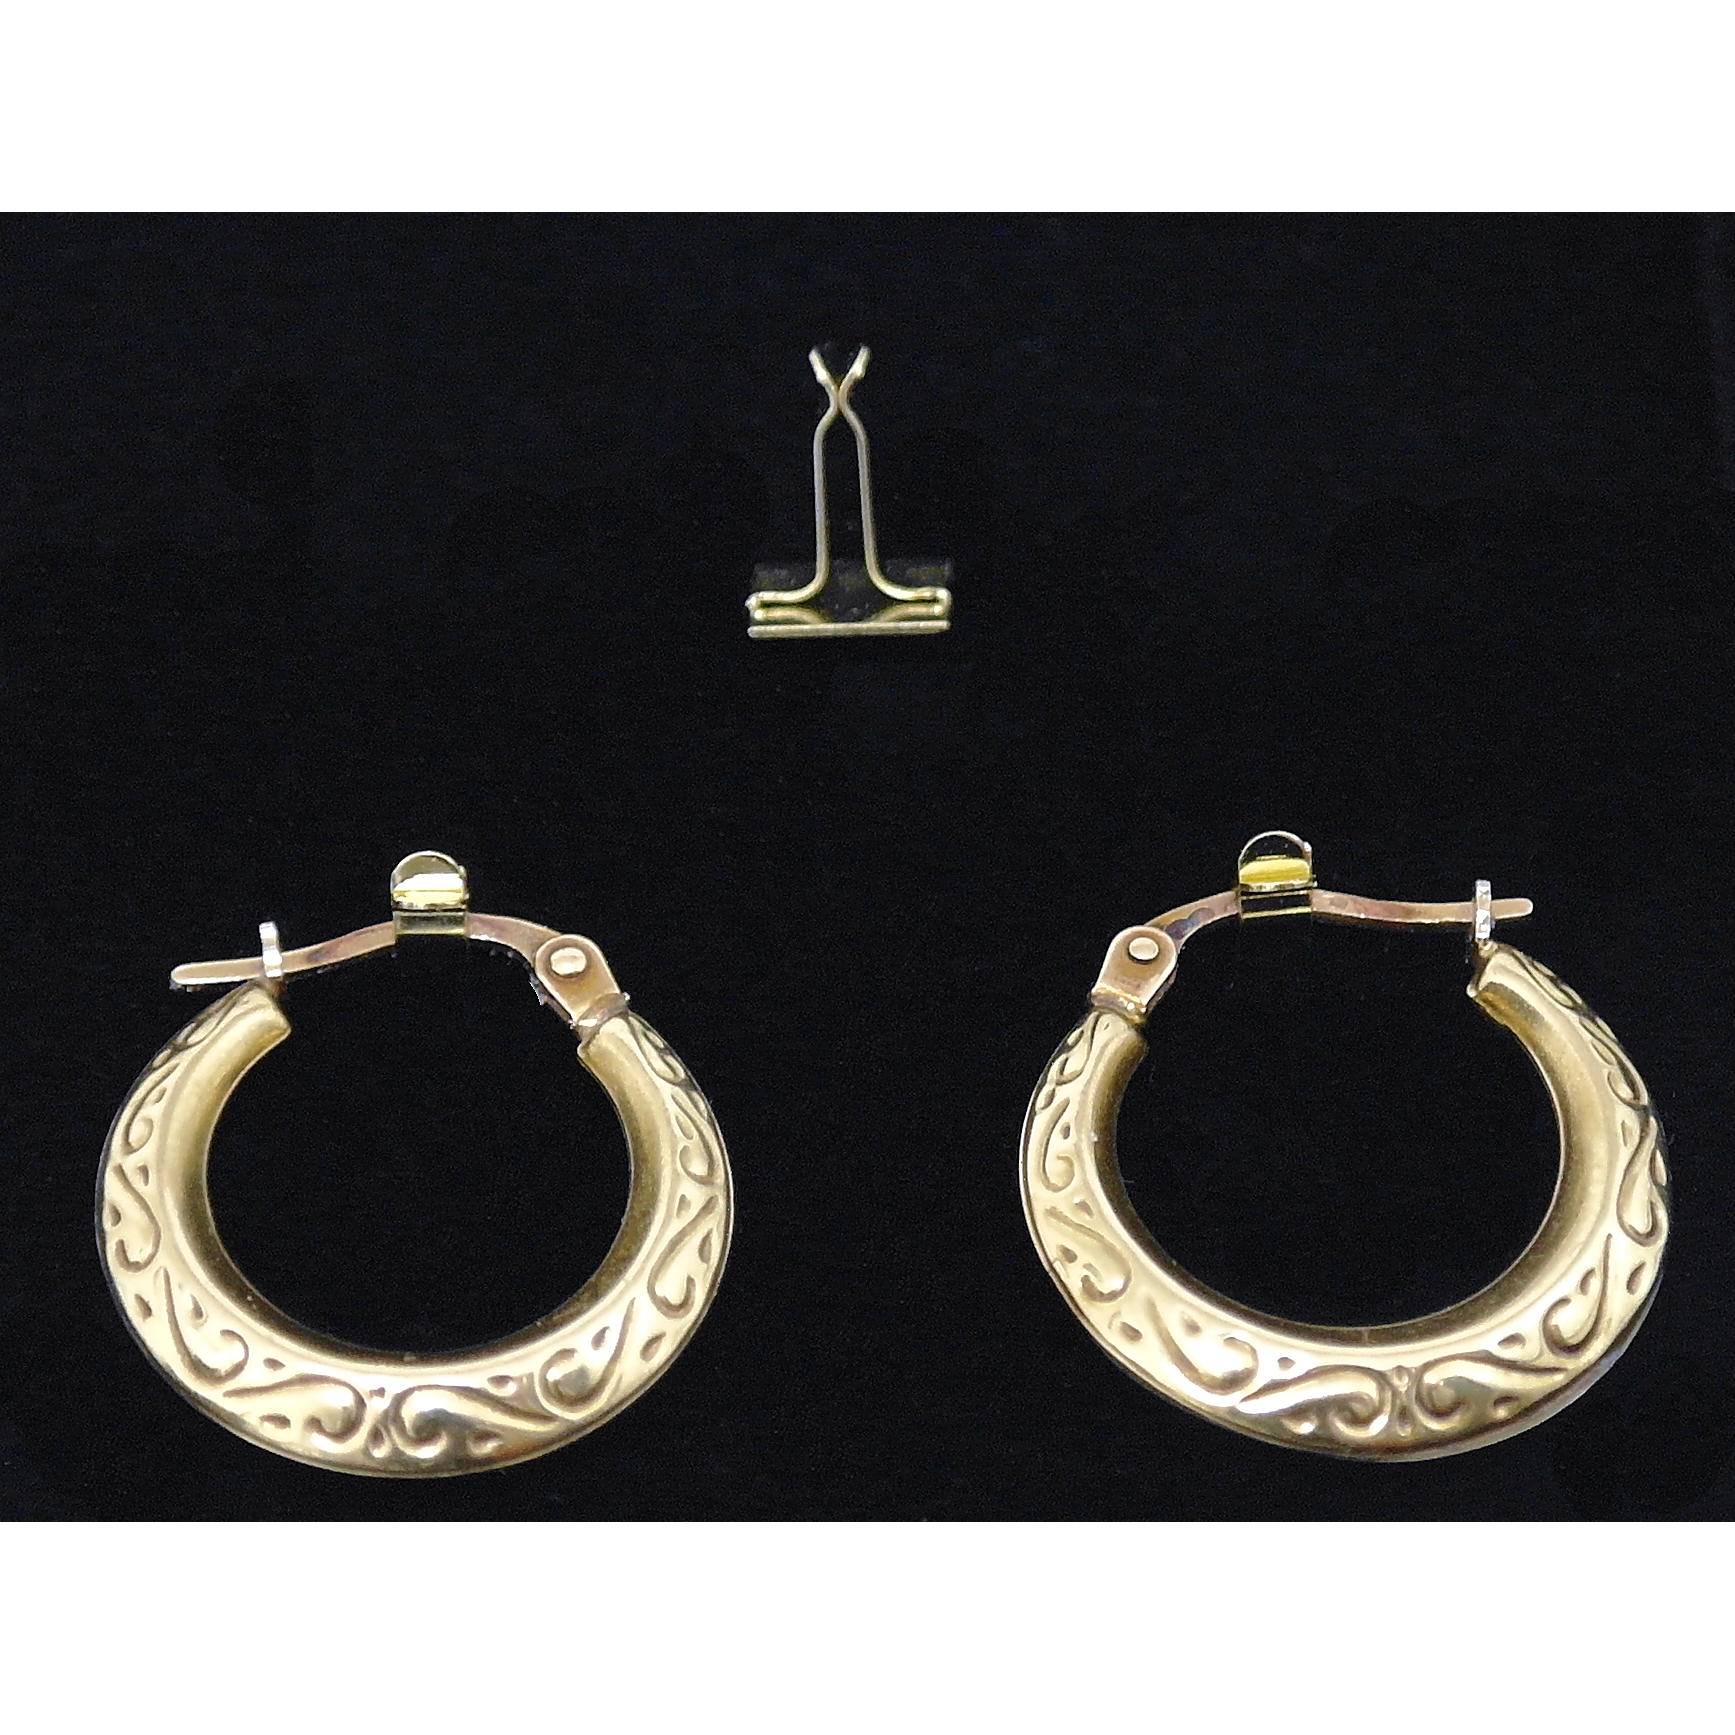 Hoop earring / body jewellery clip - metal - Grant Austin Display Packaging